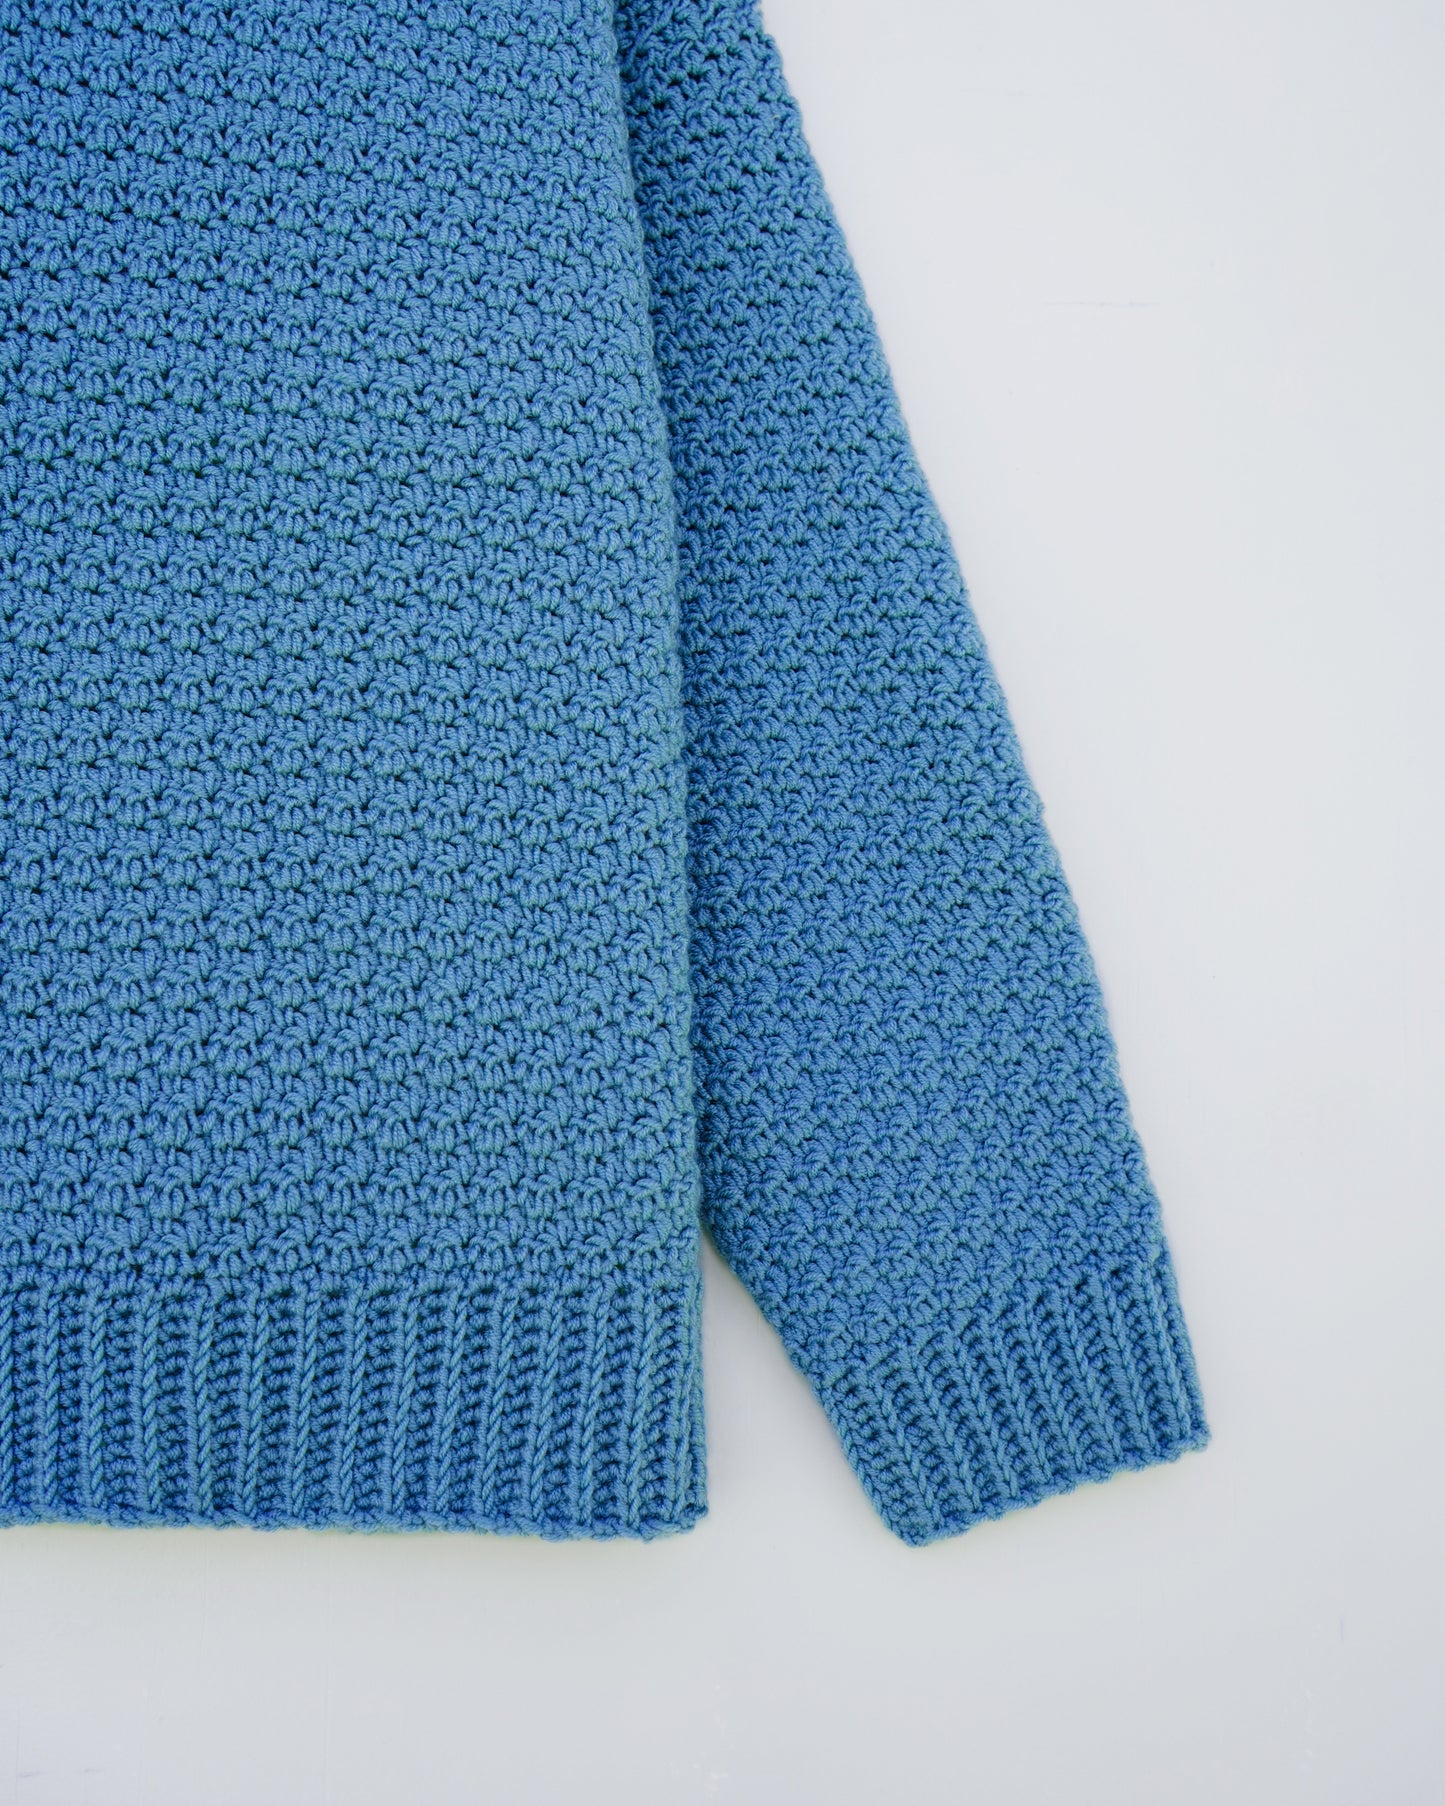 Kids' Sweater No.5 | Easy crochet sweater